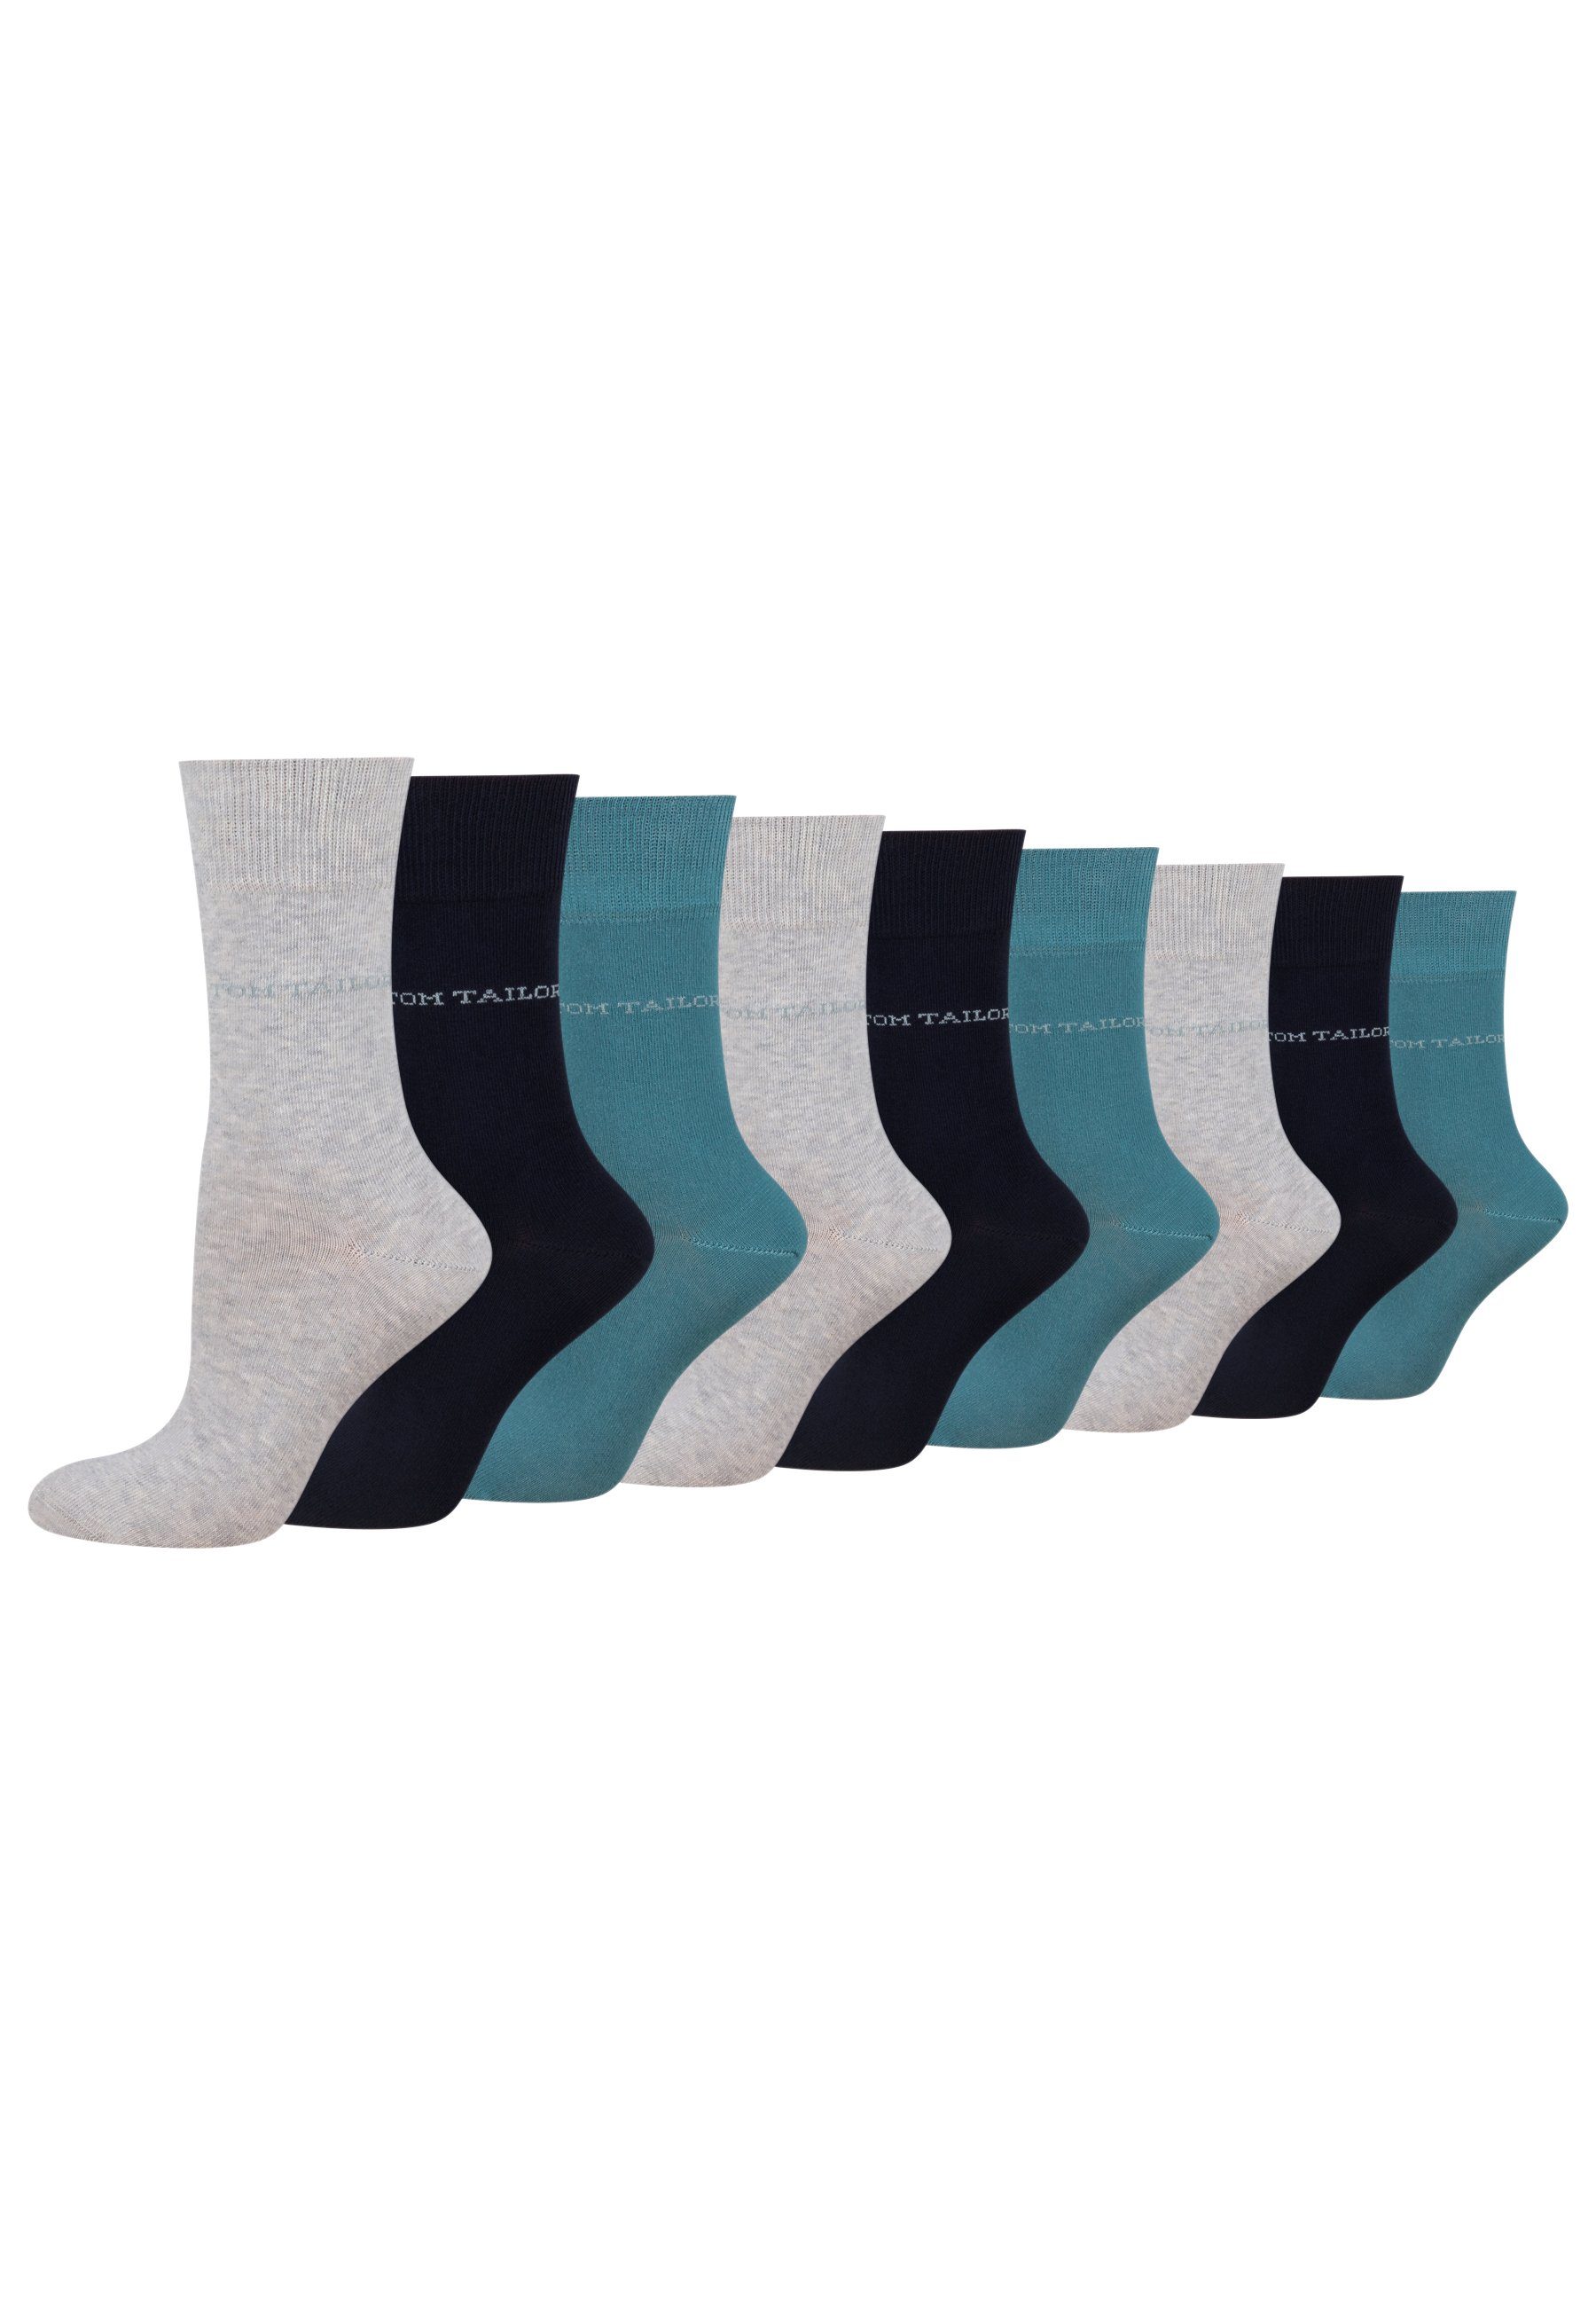 Socken für TAILOR Paar TAILOR – und Socken Alltag Freizeit warmgrey Baumwollsocken 9609820042_9 TOM 9 TOM Damen